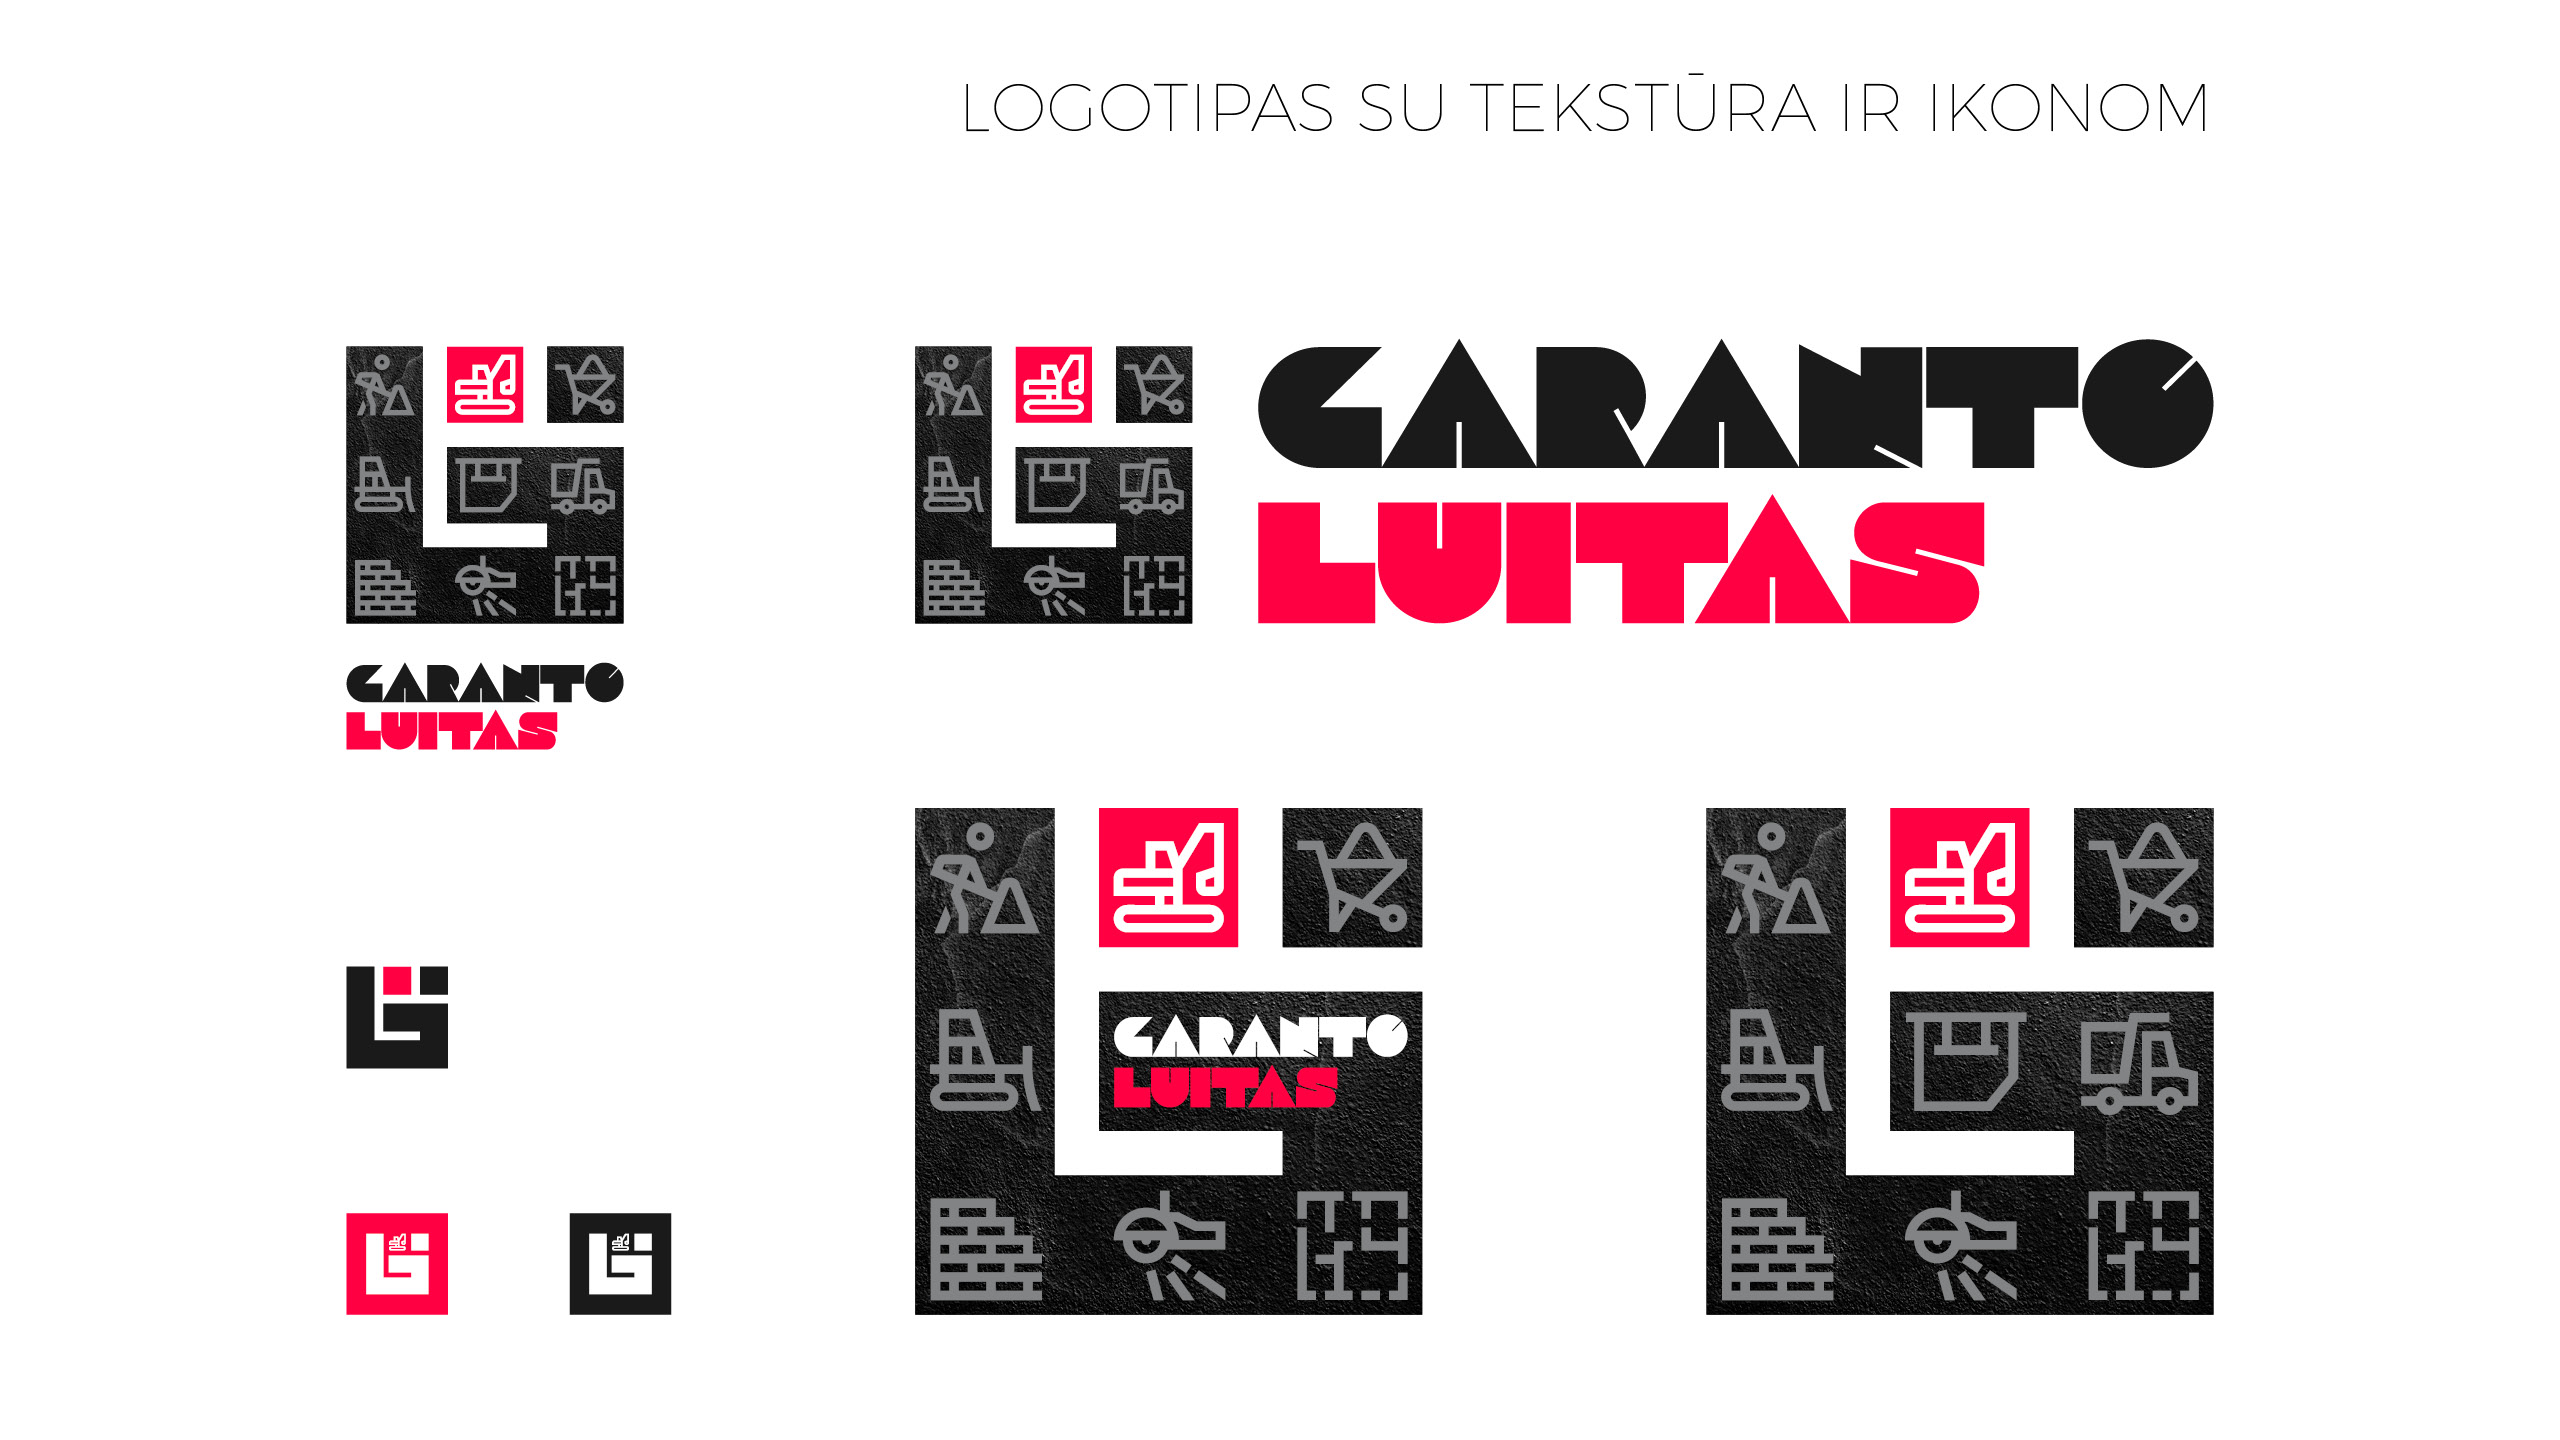 GARANTO LUITAS brandbook 08 Logobou design